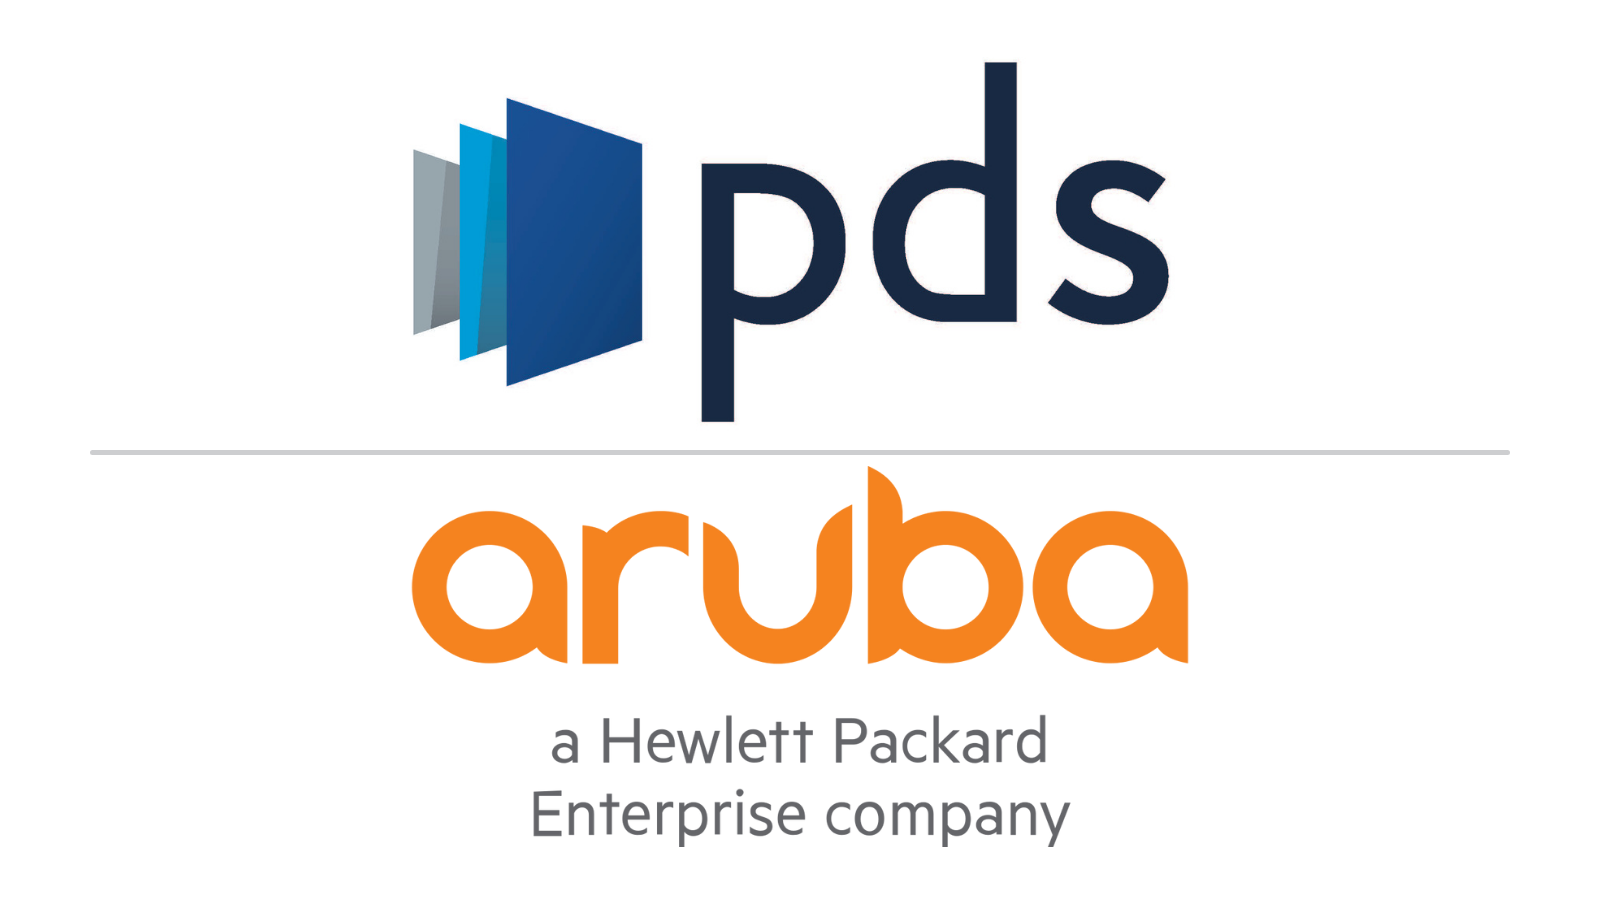 PDS Aruba joint logos